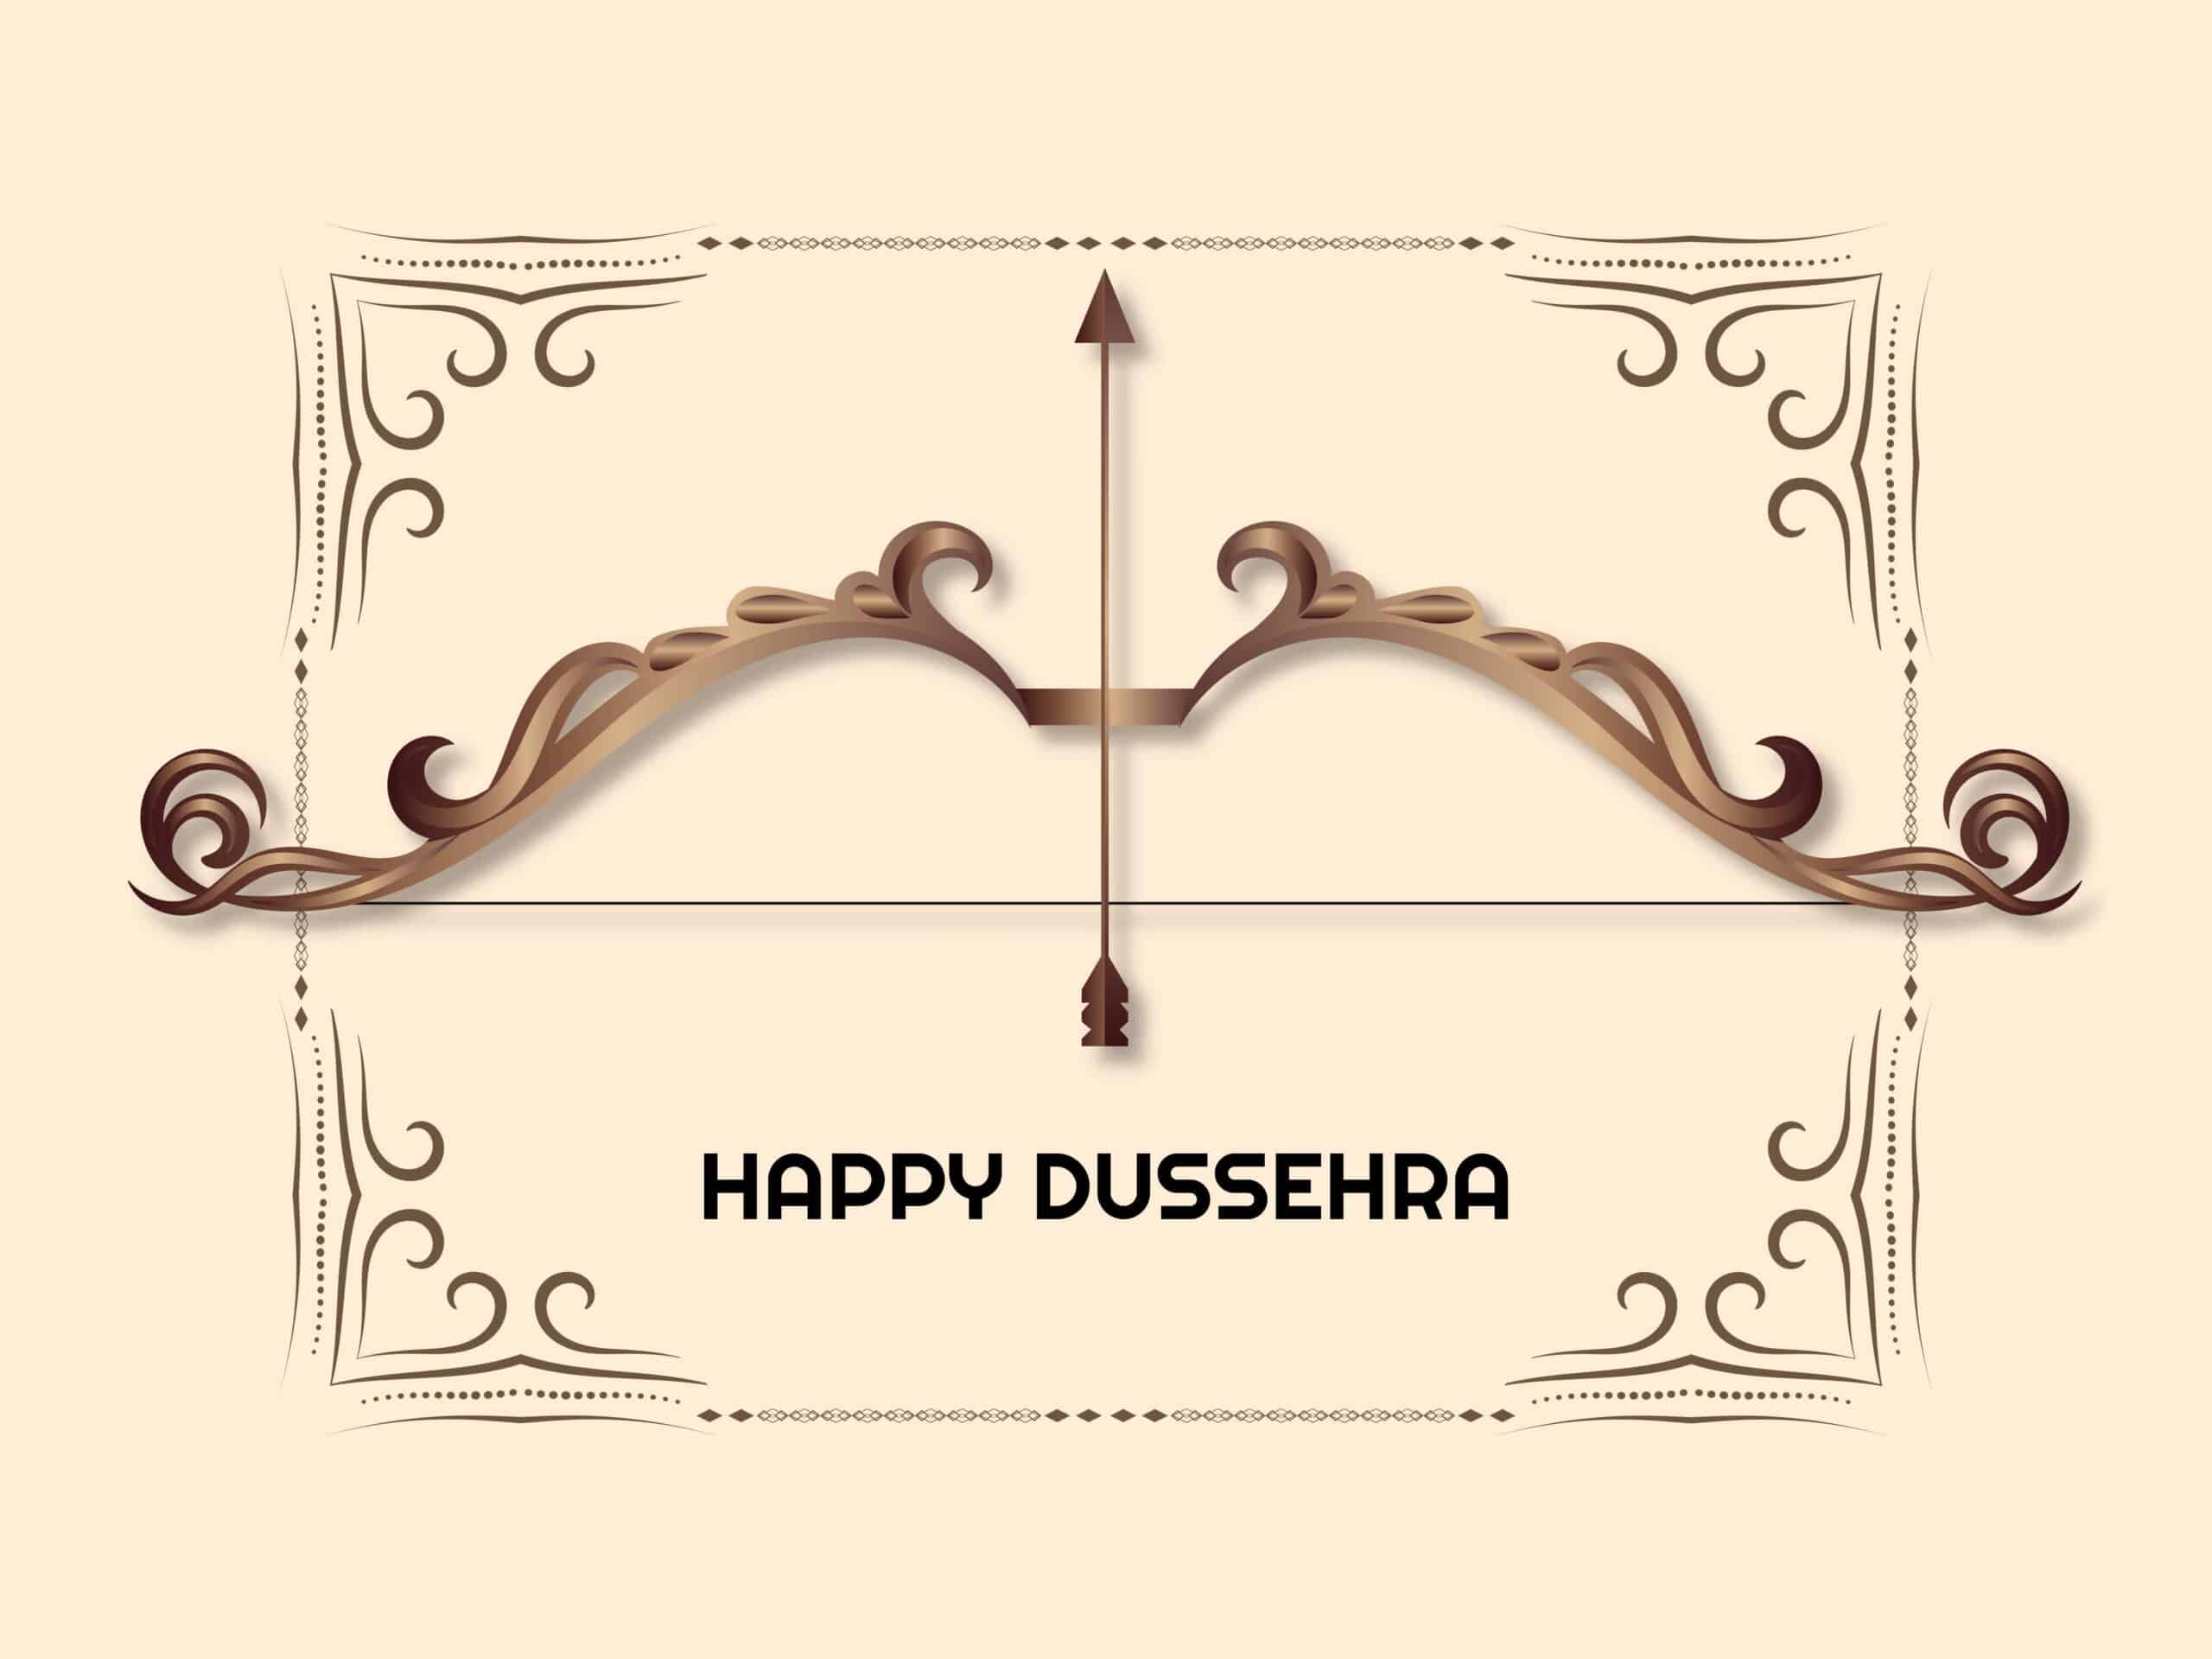 Happy Dasara Images